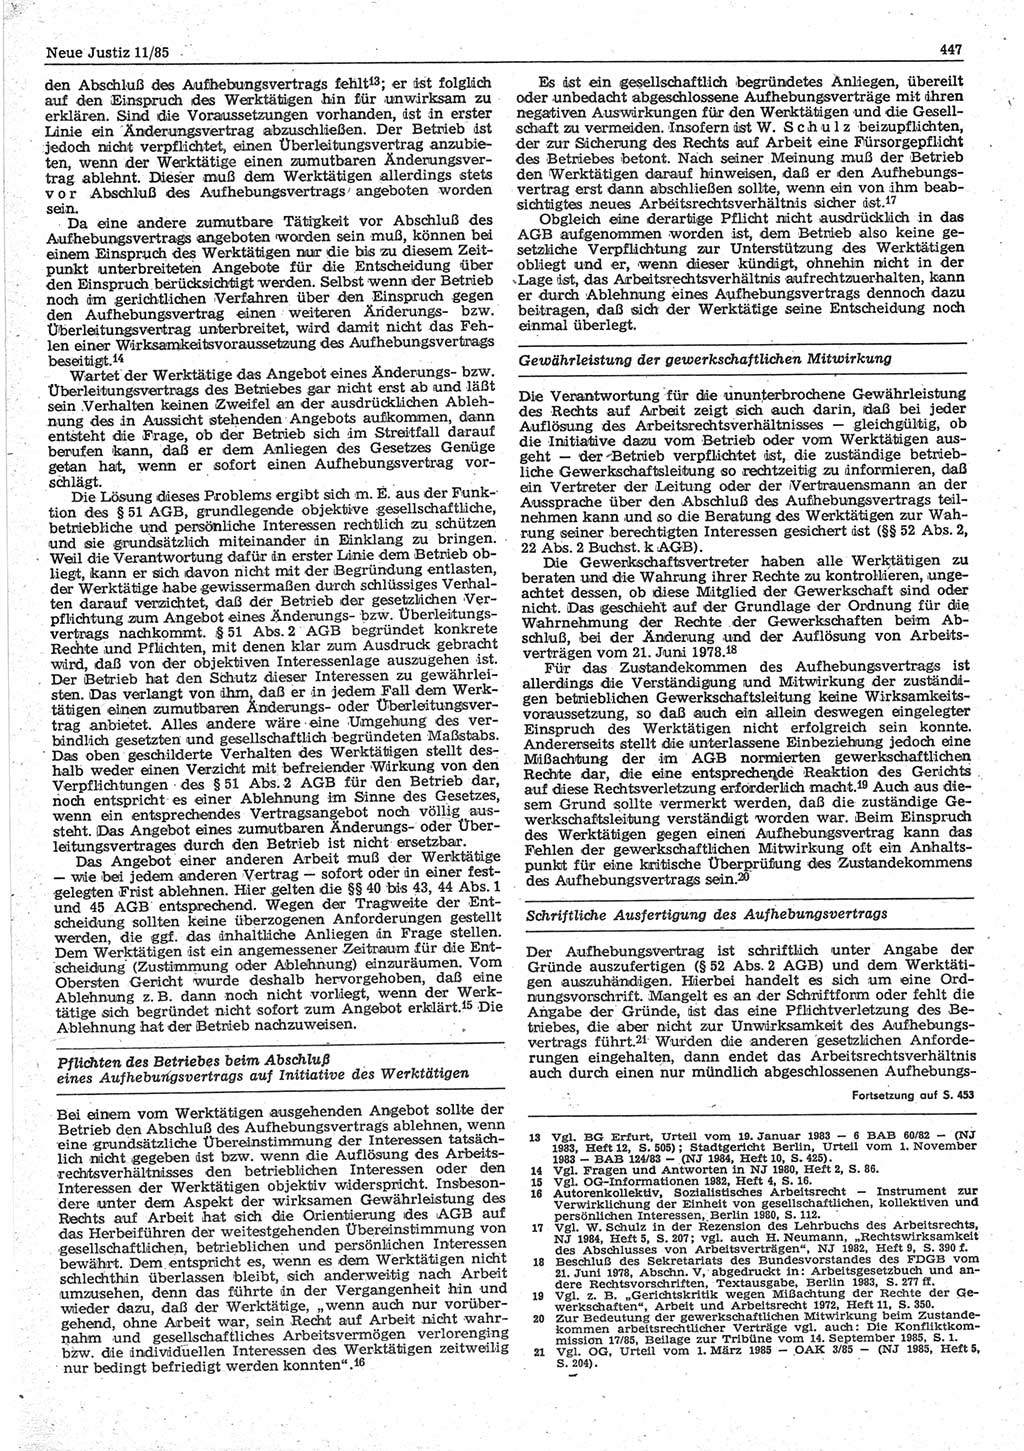 Neue Justiz (NJ), Zeitschrift für sozialistisches Recht und Gesetzlichkeit [Deutsche Demokratische Republik (DDR)], 39. Jahrgang 1985, Seite 447 (NJ DDR 1985, S. 447)